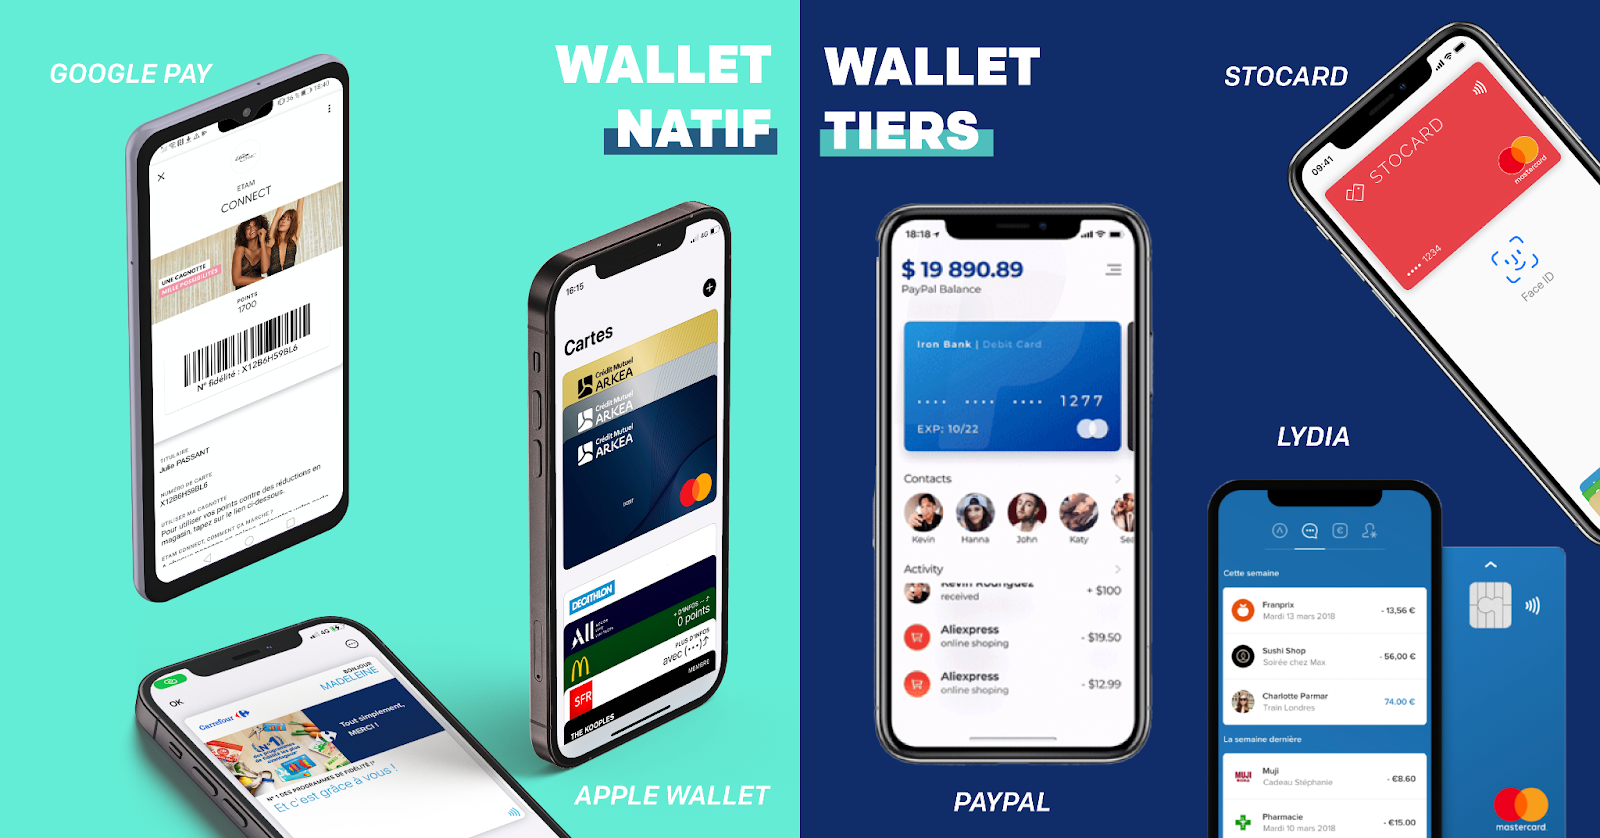 Wallet Natif vs Wallet Tier